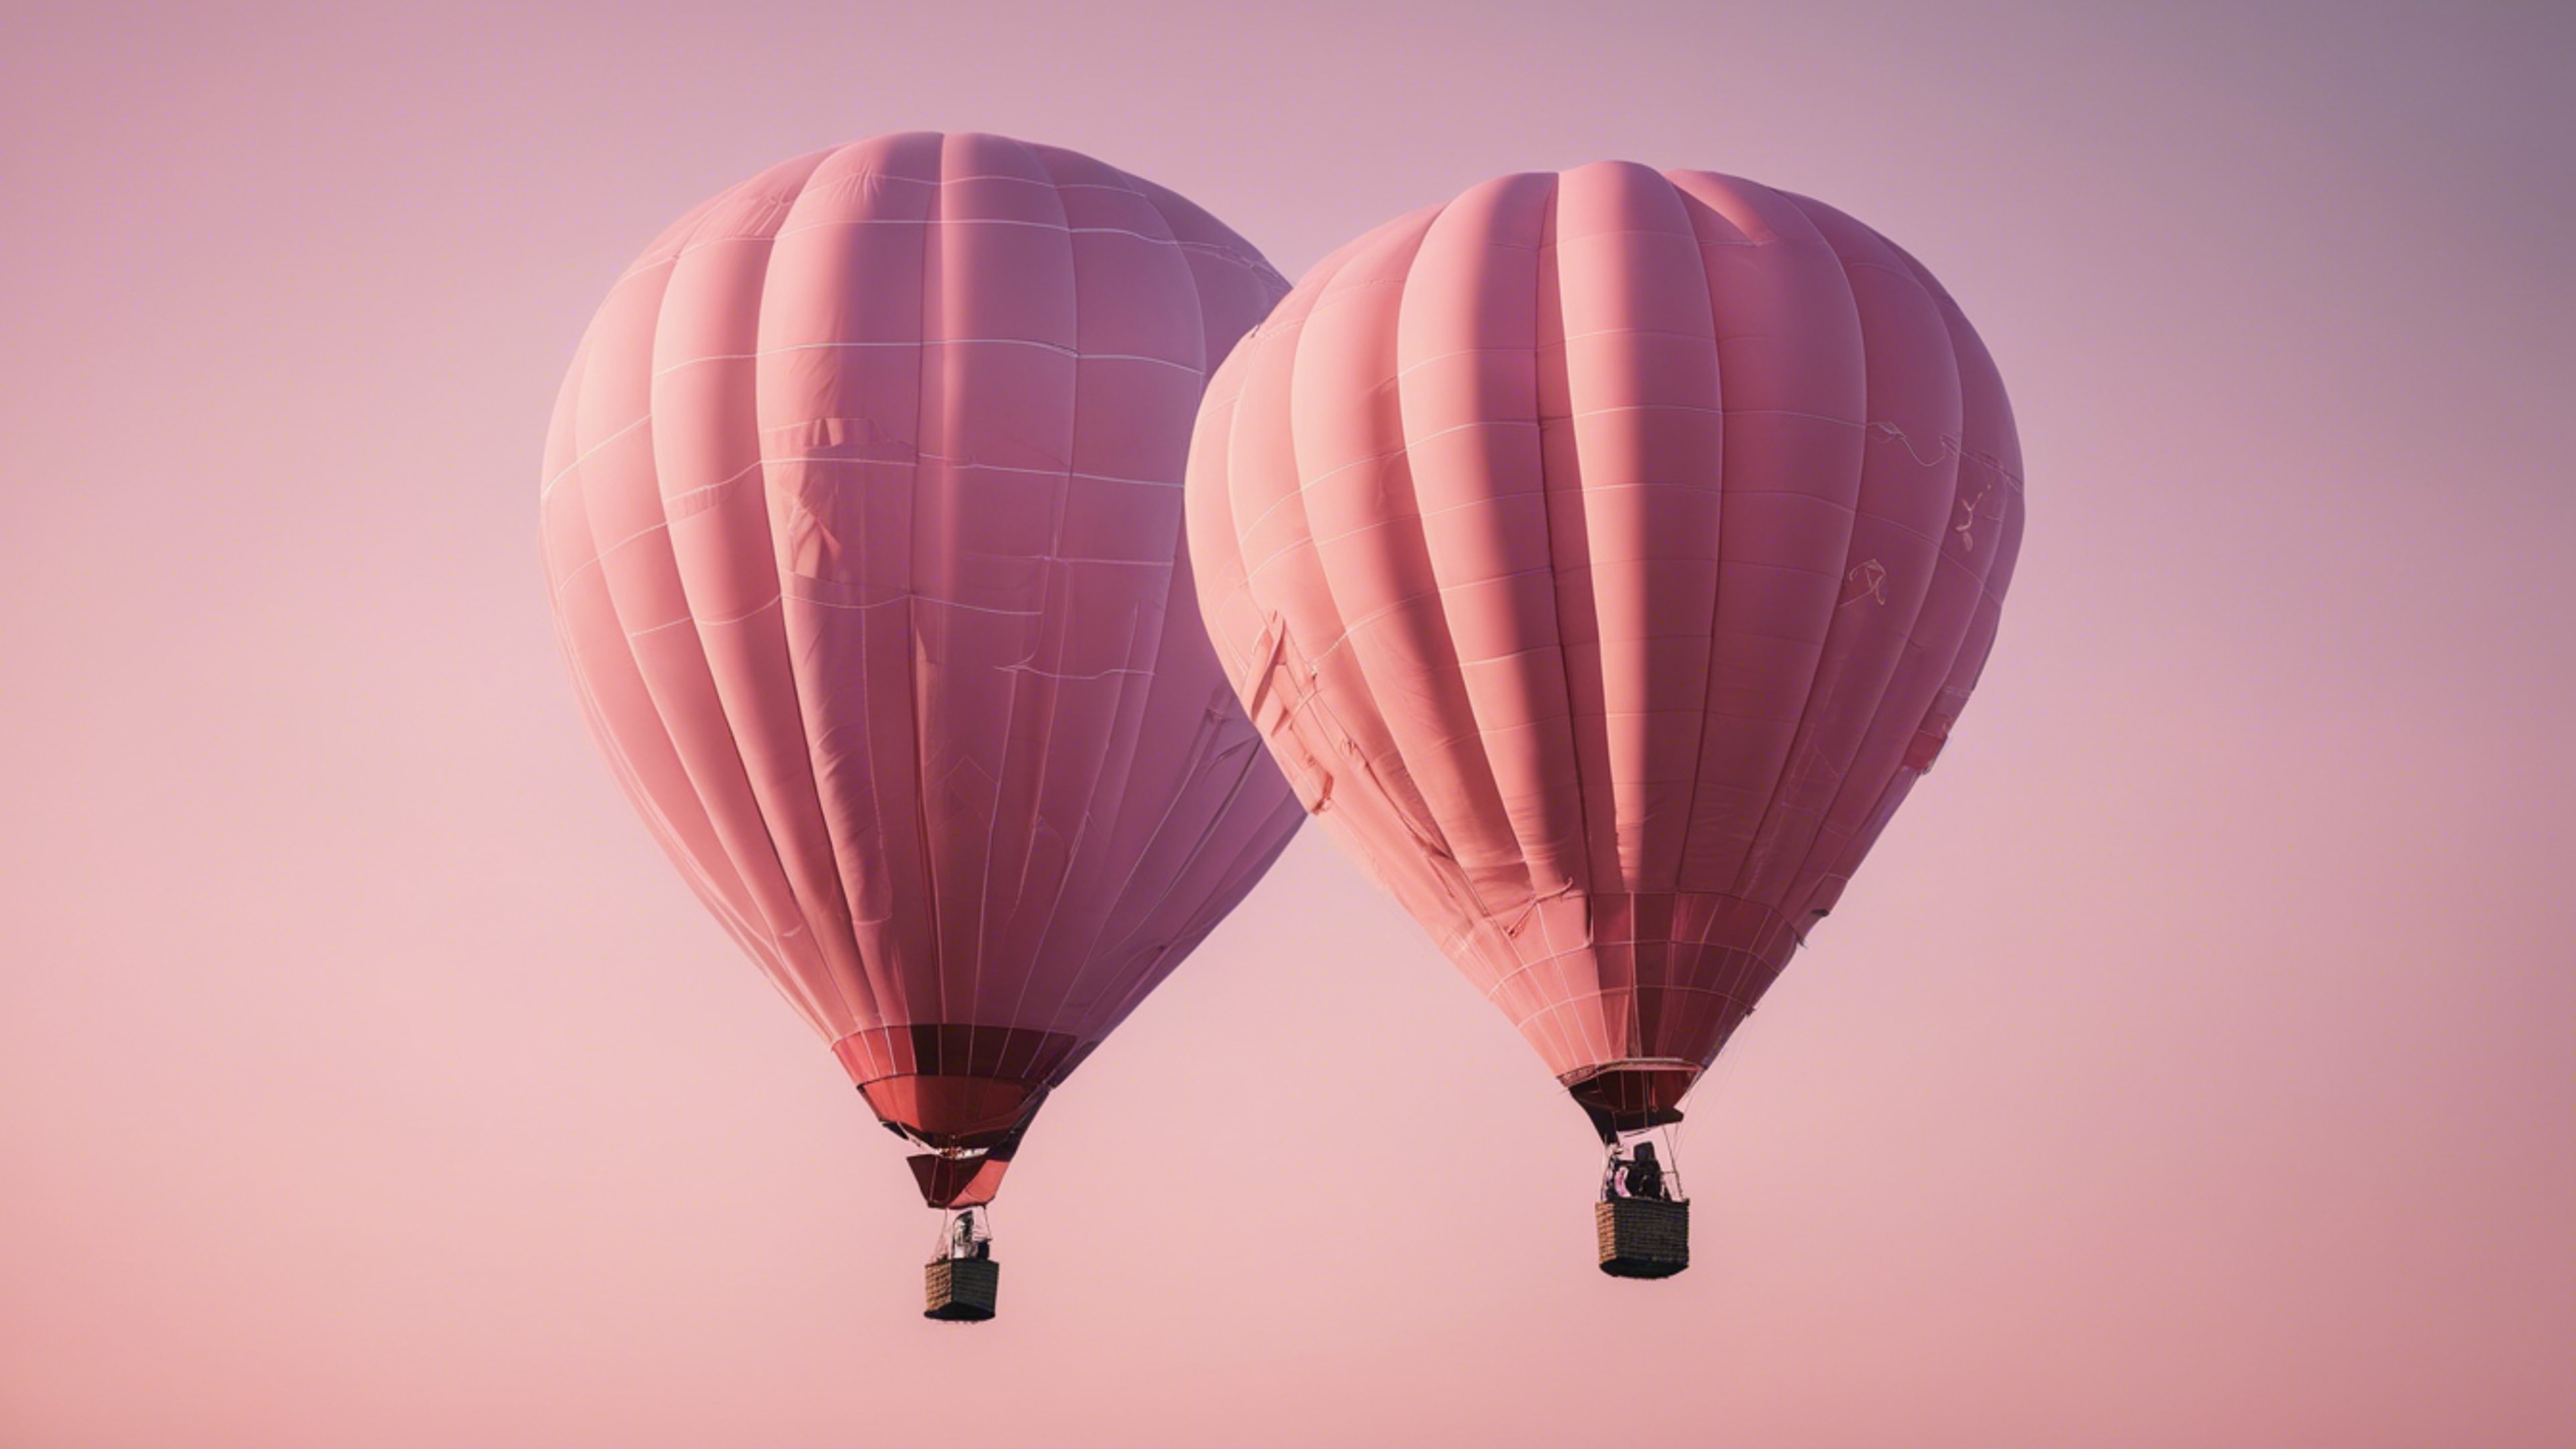 A light pink hot air balloon floating across a clear sky after sunrise. duvar kağıdı[de0e3537891a4cb8b964]